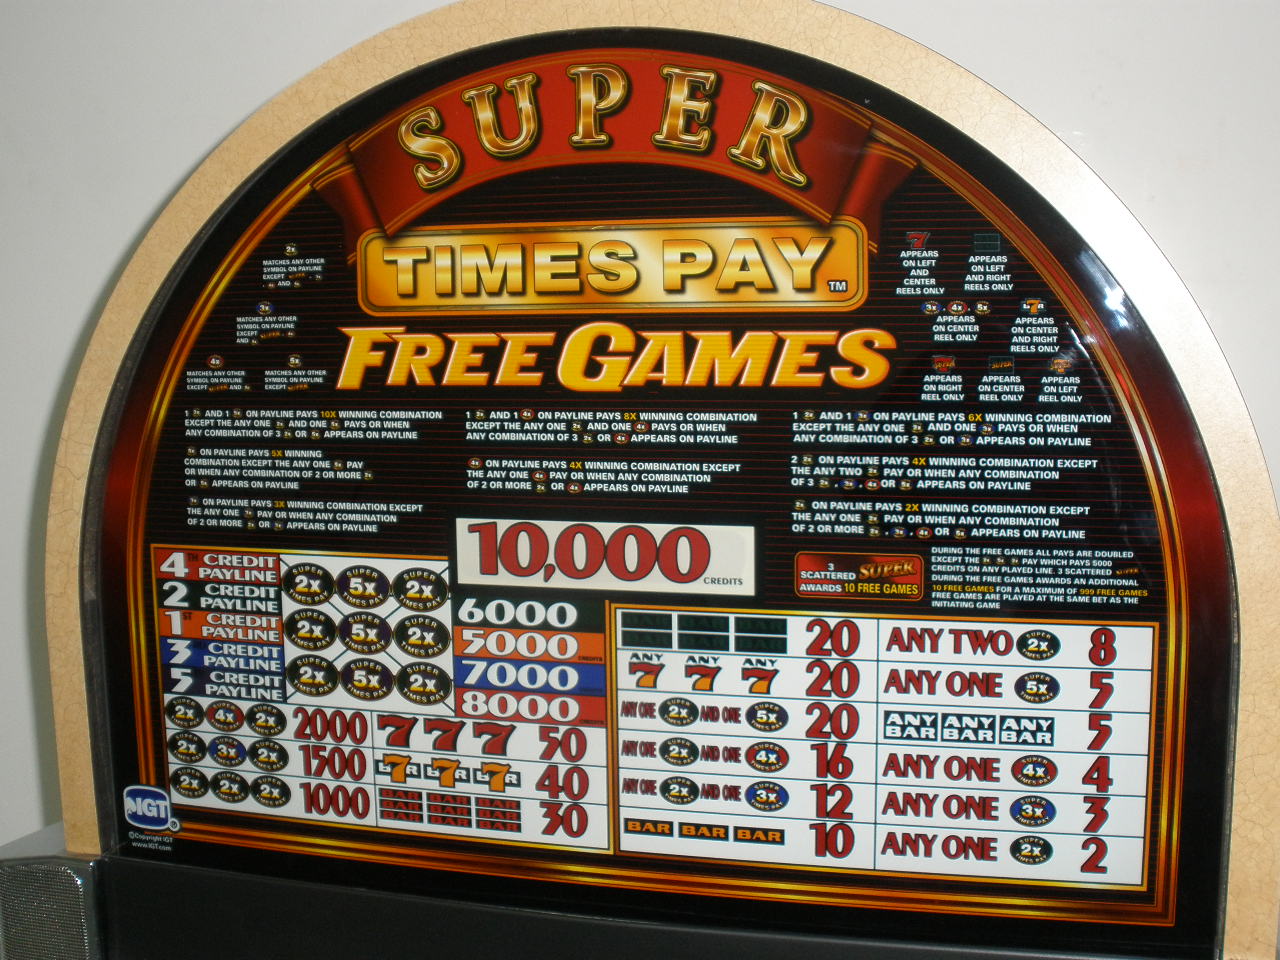 multi game slot machine for sale